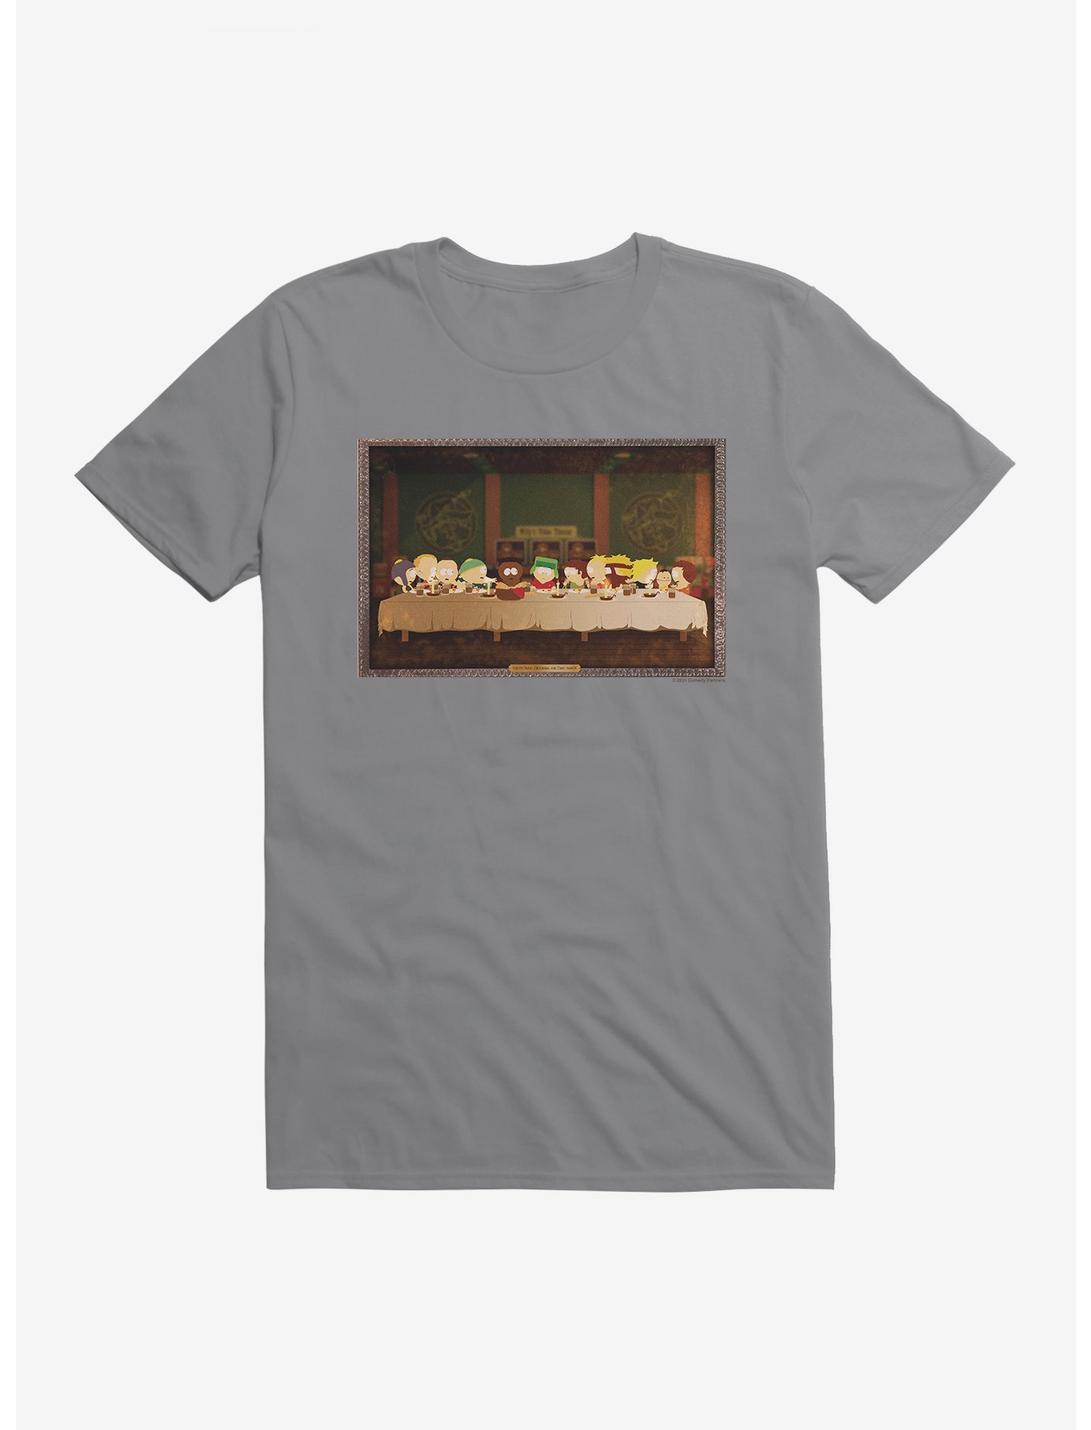 South Park Last Supper T-Shirt, , hi-res